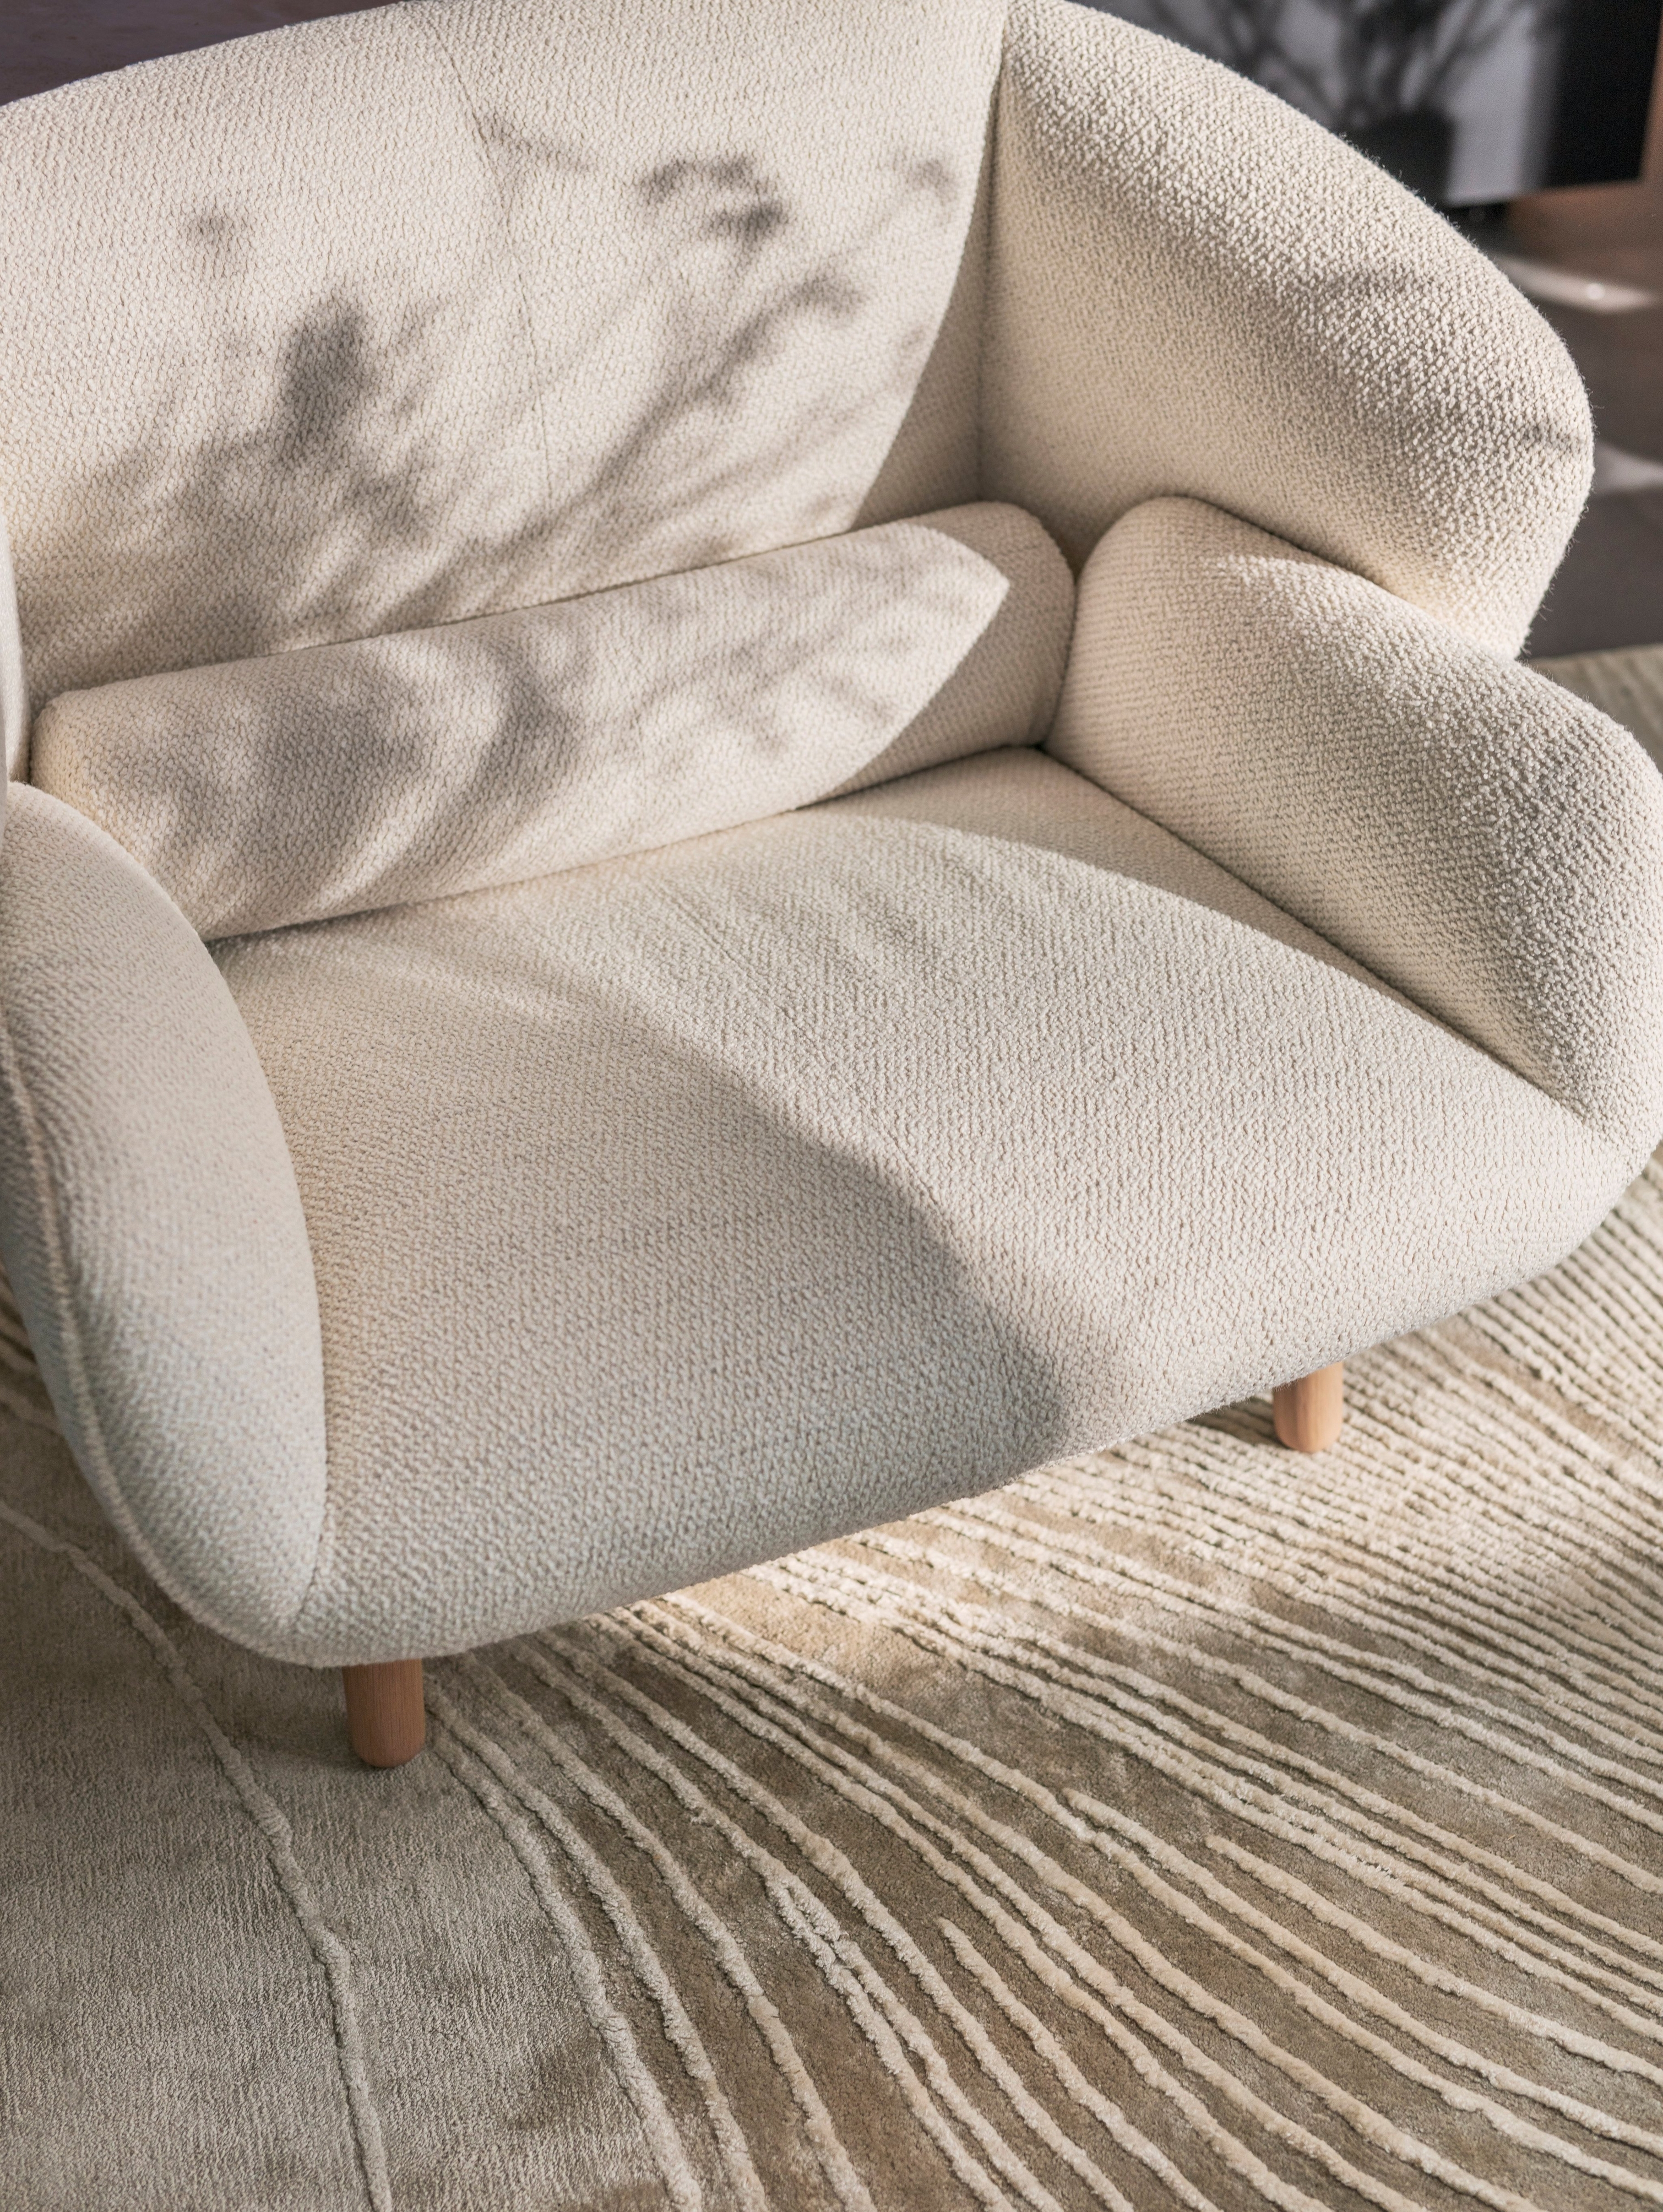 Le fauteuil Fusion en tissu Lazio blanc associé au tapis Tide gris/blanc.